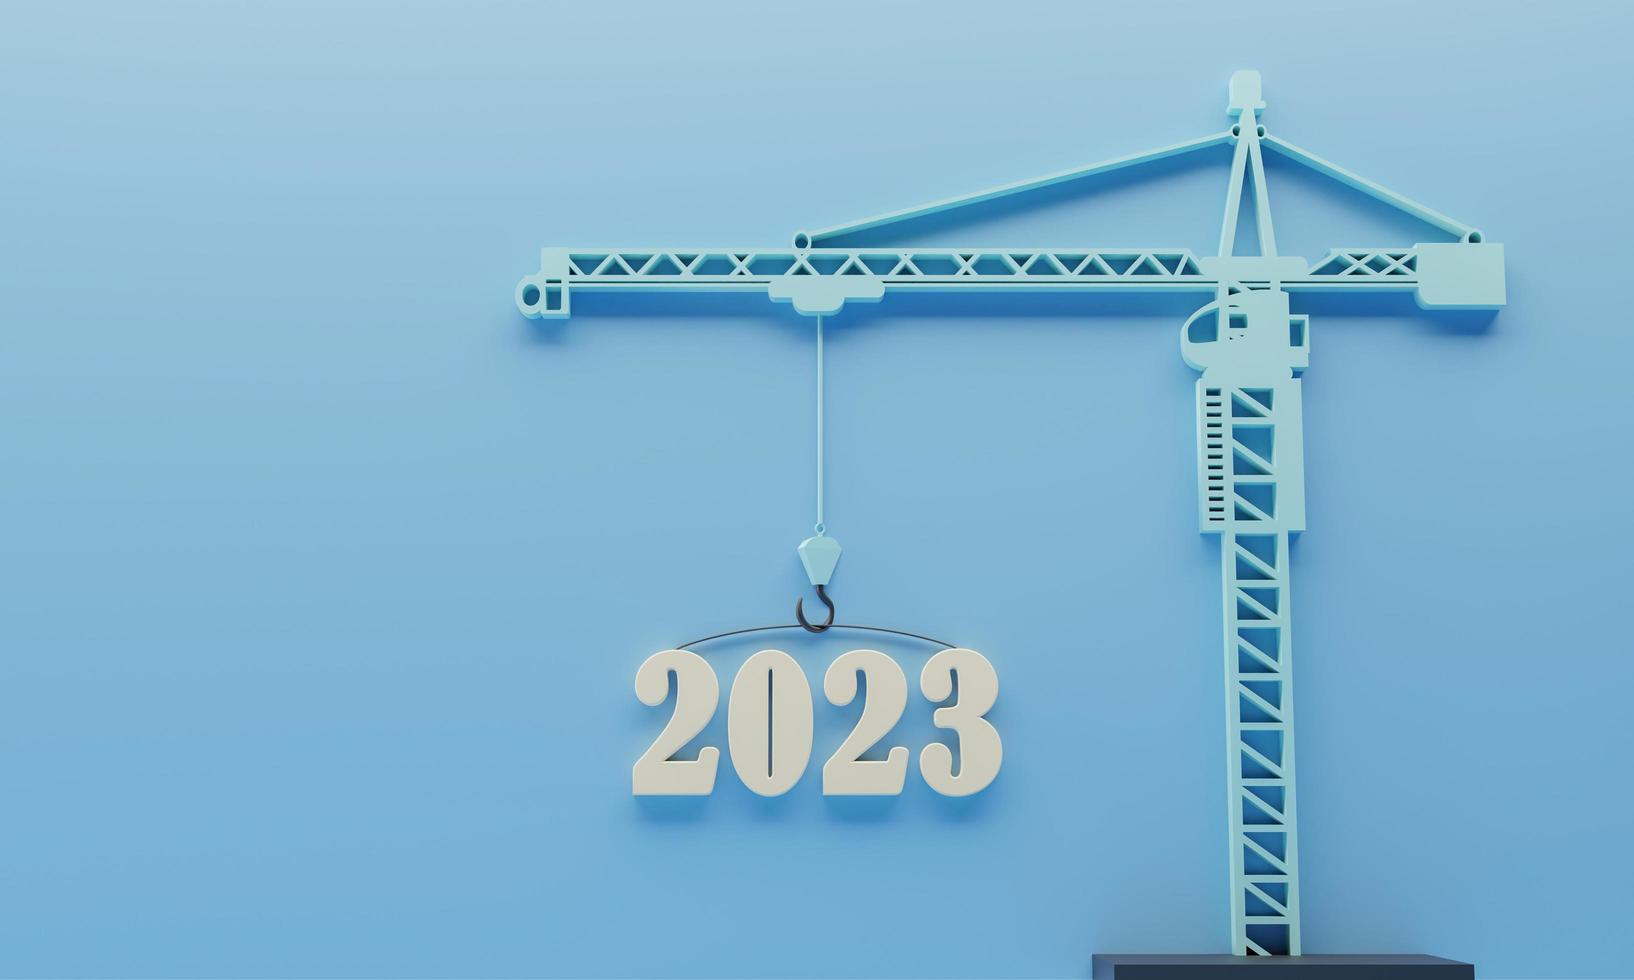 2023 numéro 3d sur une grue sur fond bleu, bonne année 2023 pour un chantier de construction, vision pour le fond de l'année prochaine. illustration de rendu 3d. photo